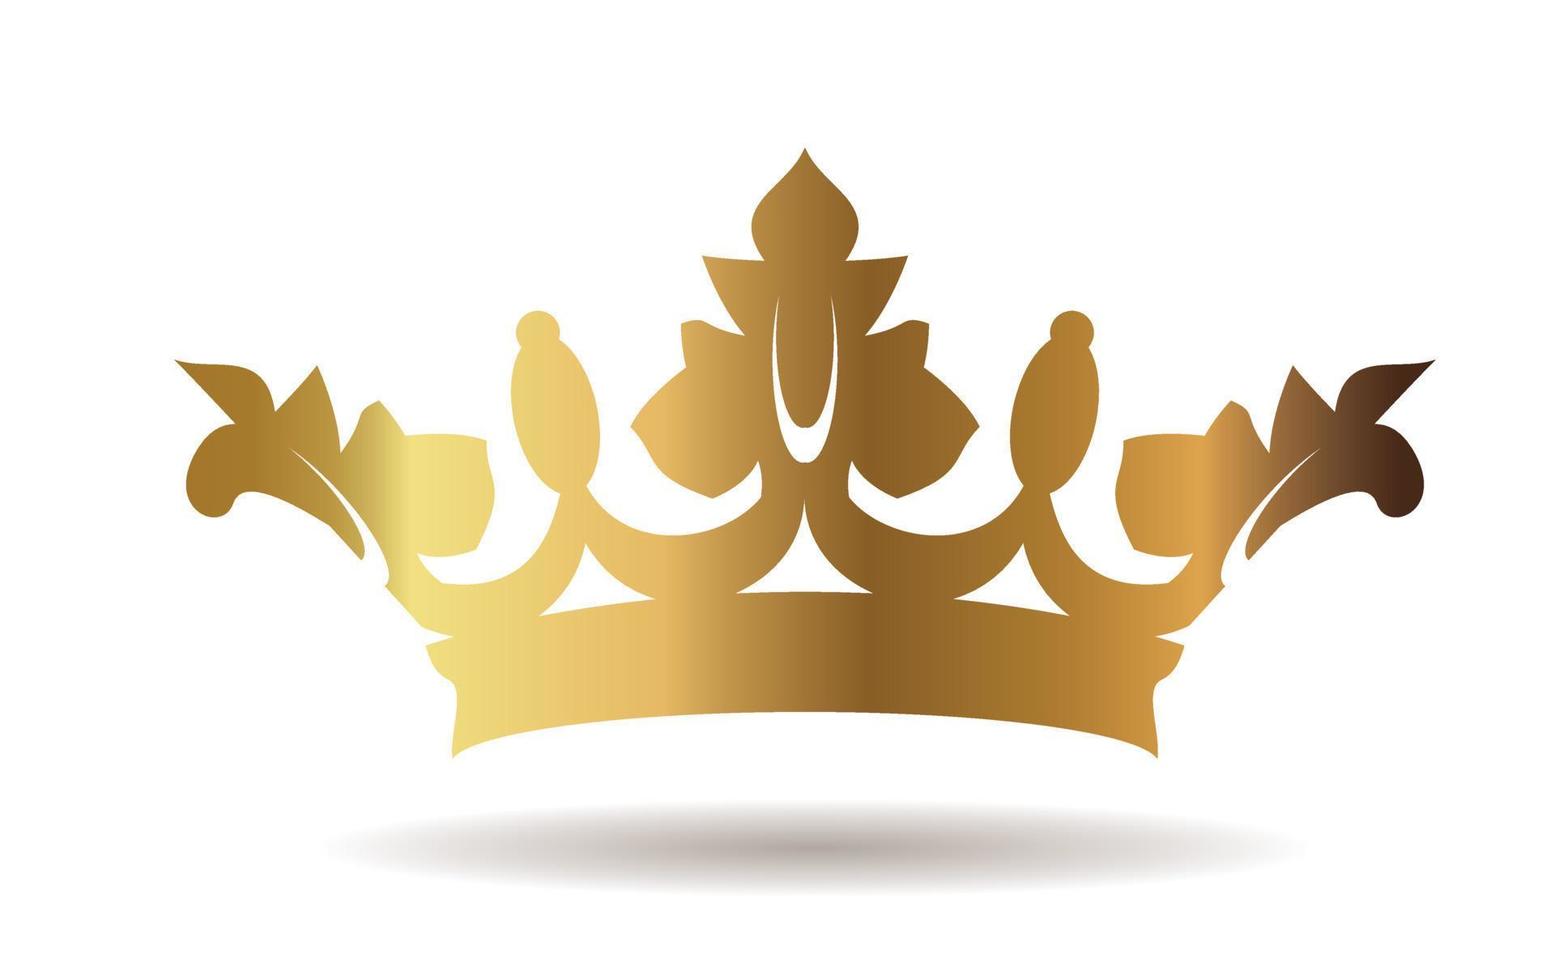 Vector golden king crown on white background. Vector Illustration. Emblem and Royal symbols.